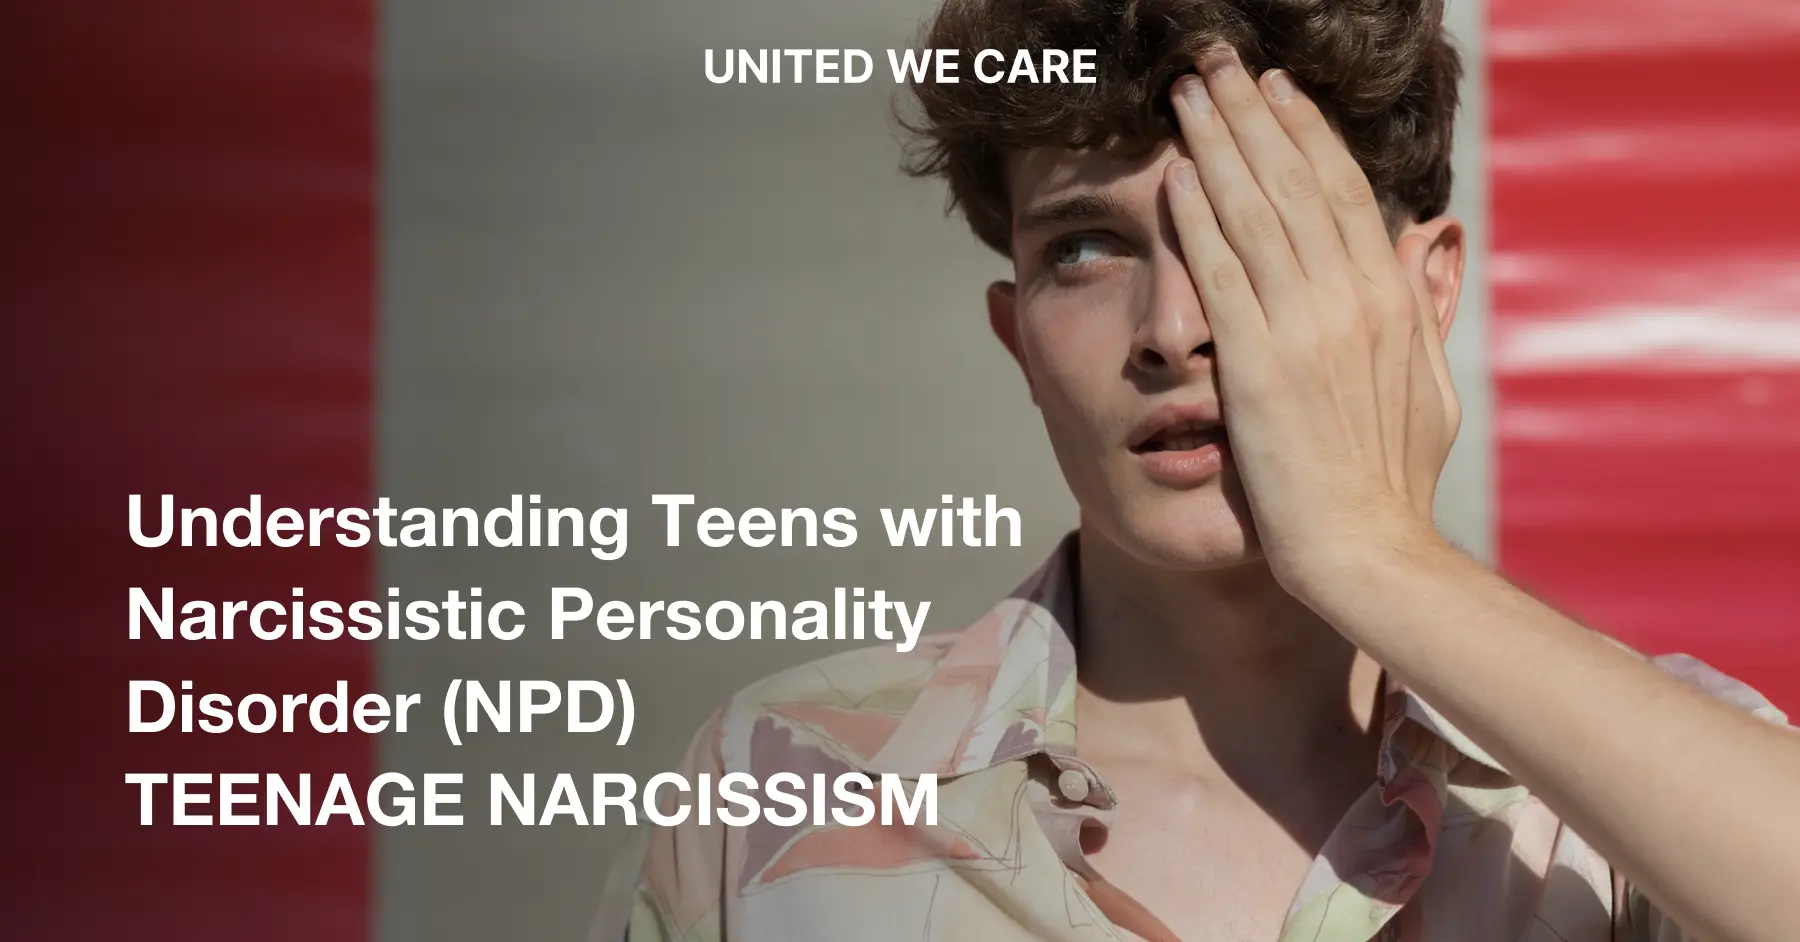 Adolescente con trastorno narcisista de la personalidad: 6 maneras de entenderlo